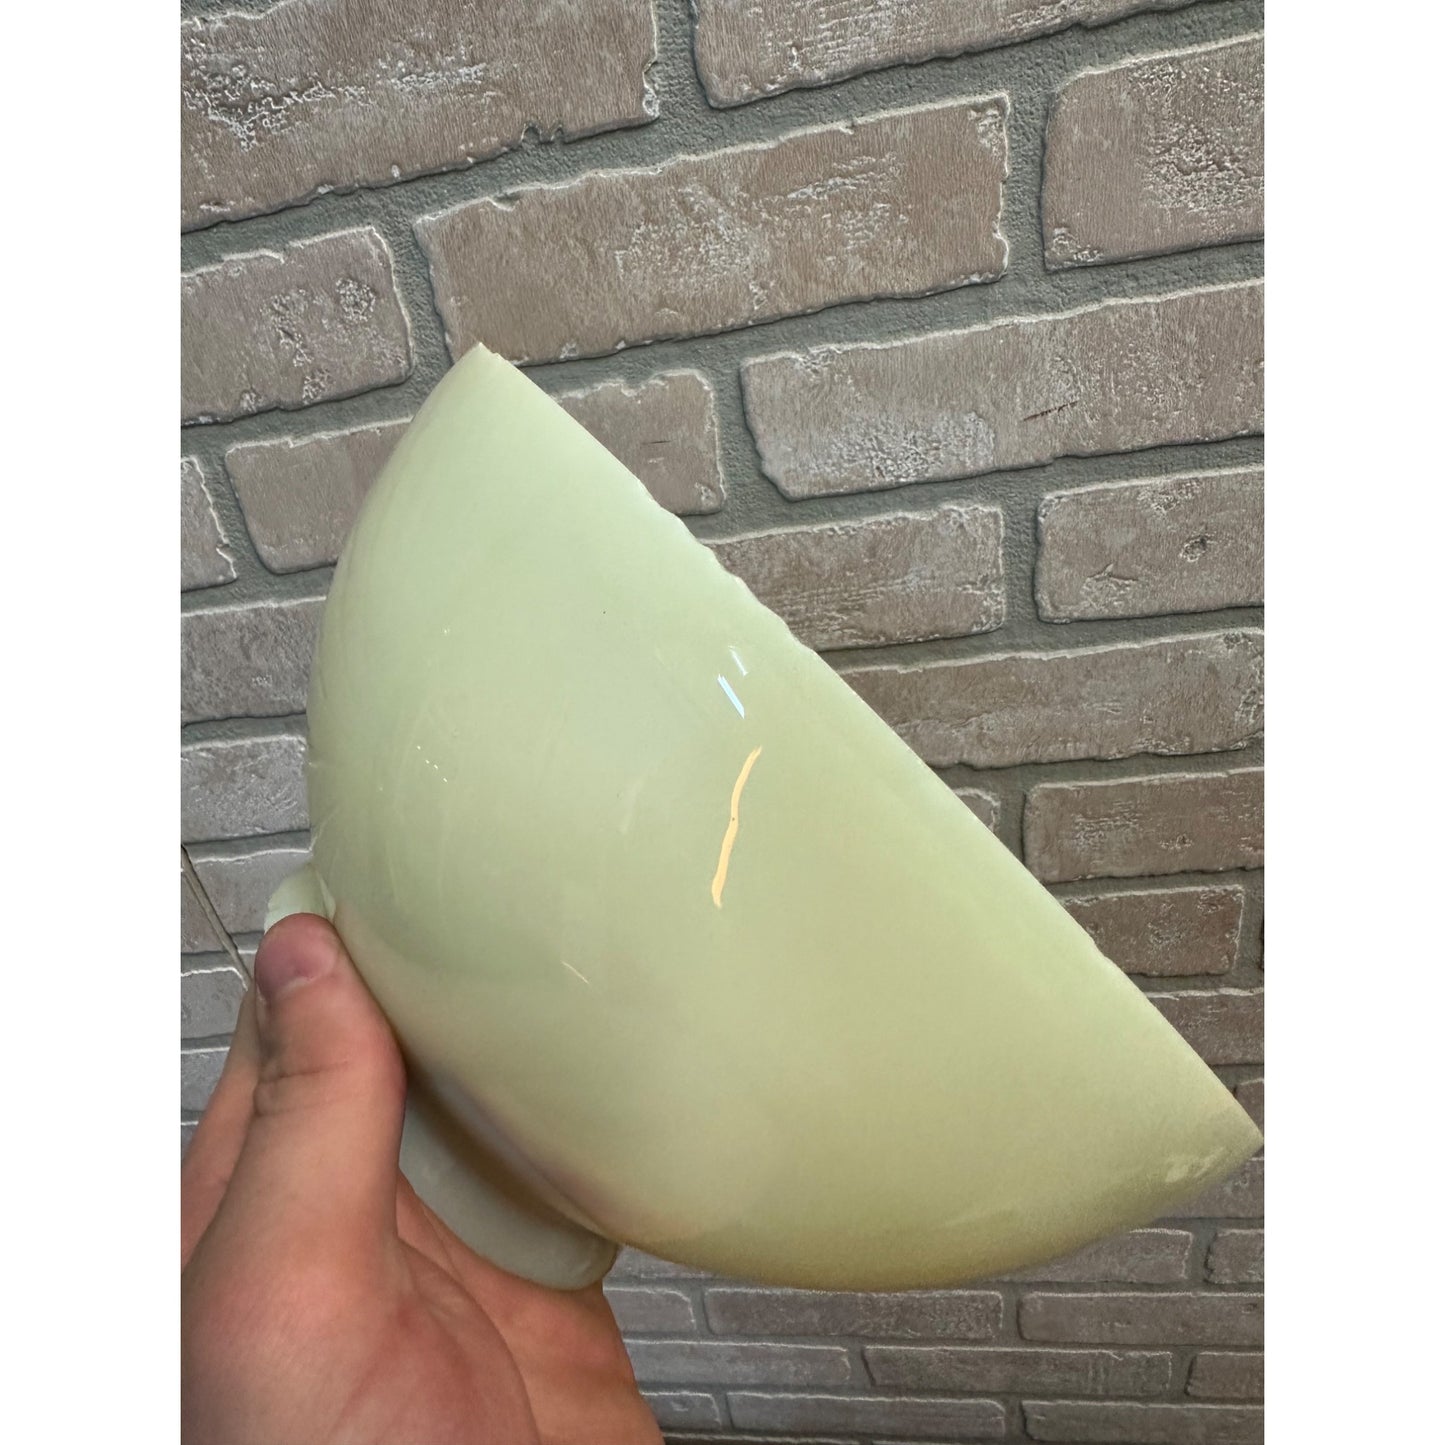 Antique Vintage Uranium Glass 7.5” Oil Lamp Shade